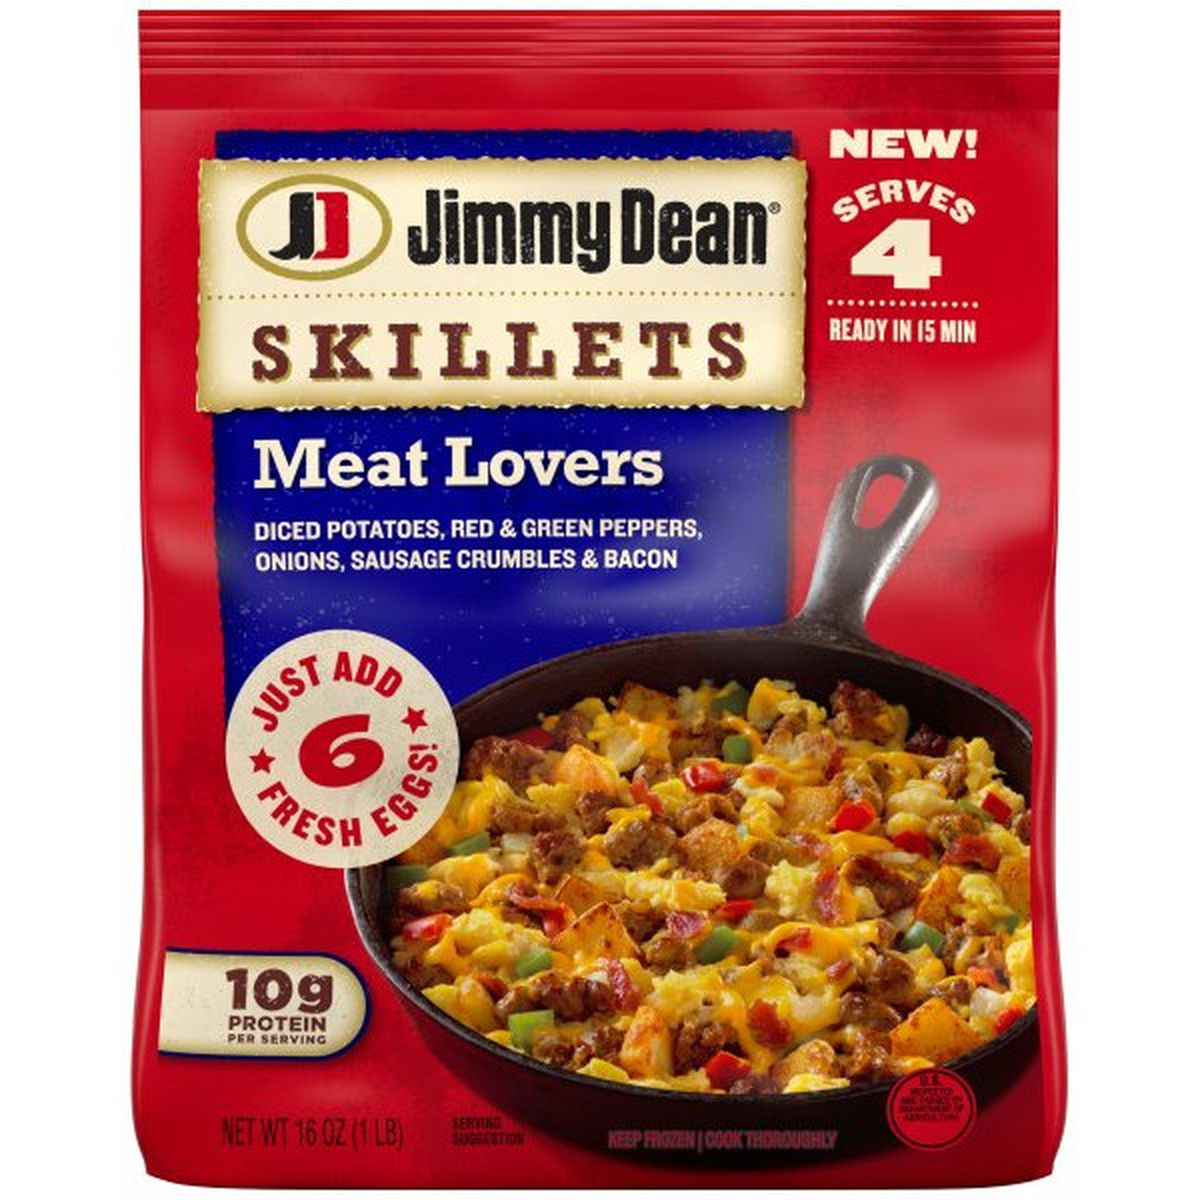 Calories in Jimmy Dean Meat Lovers Breakfast Skillet